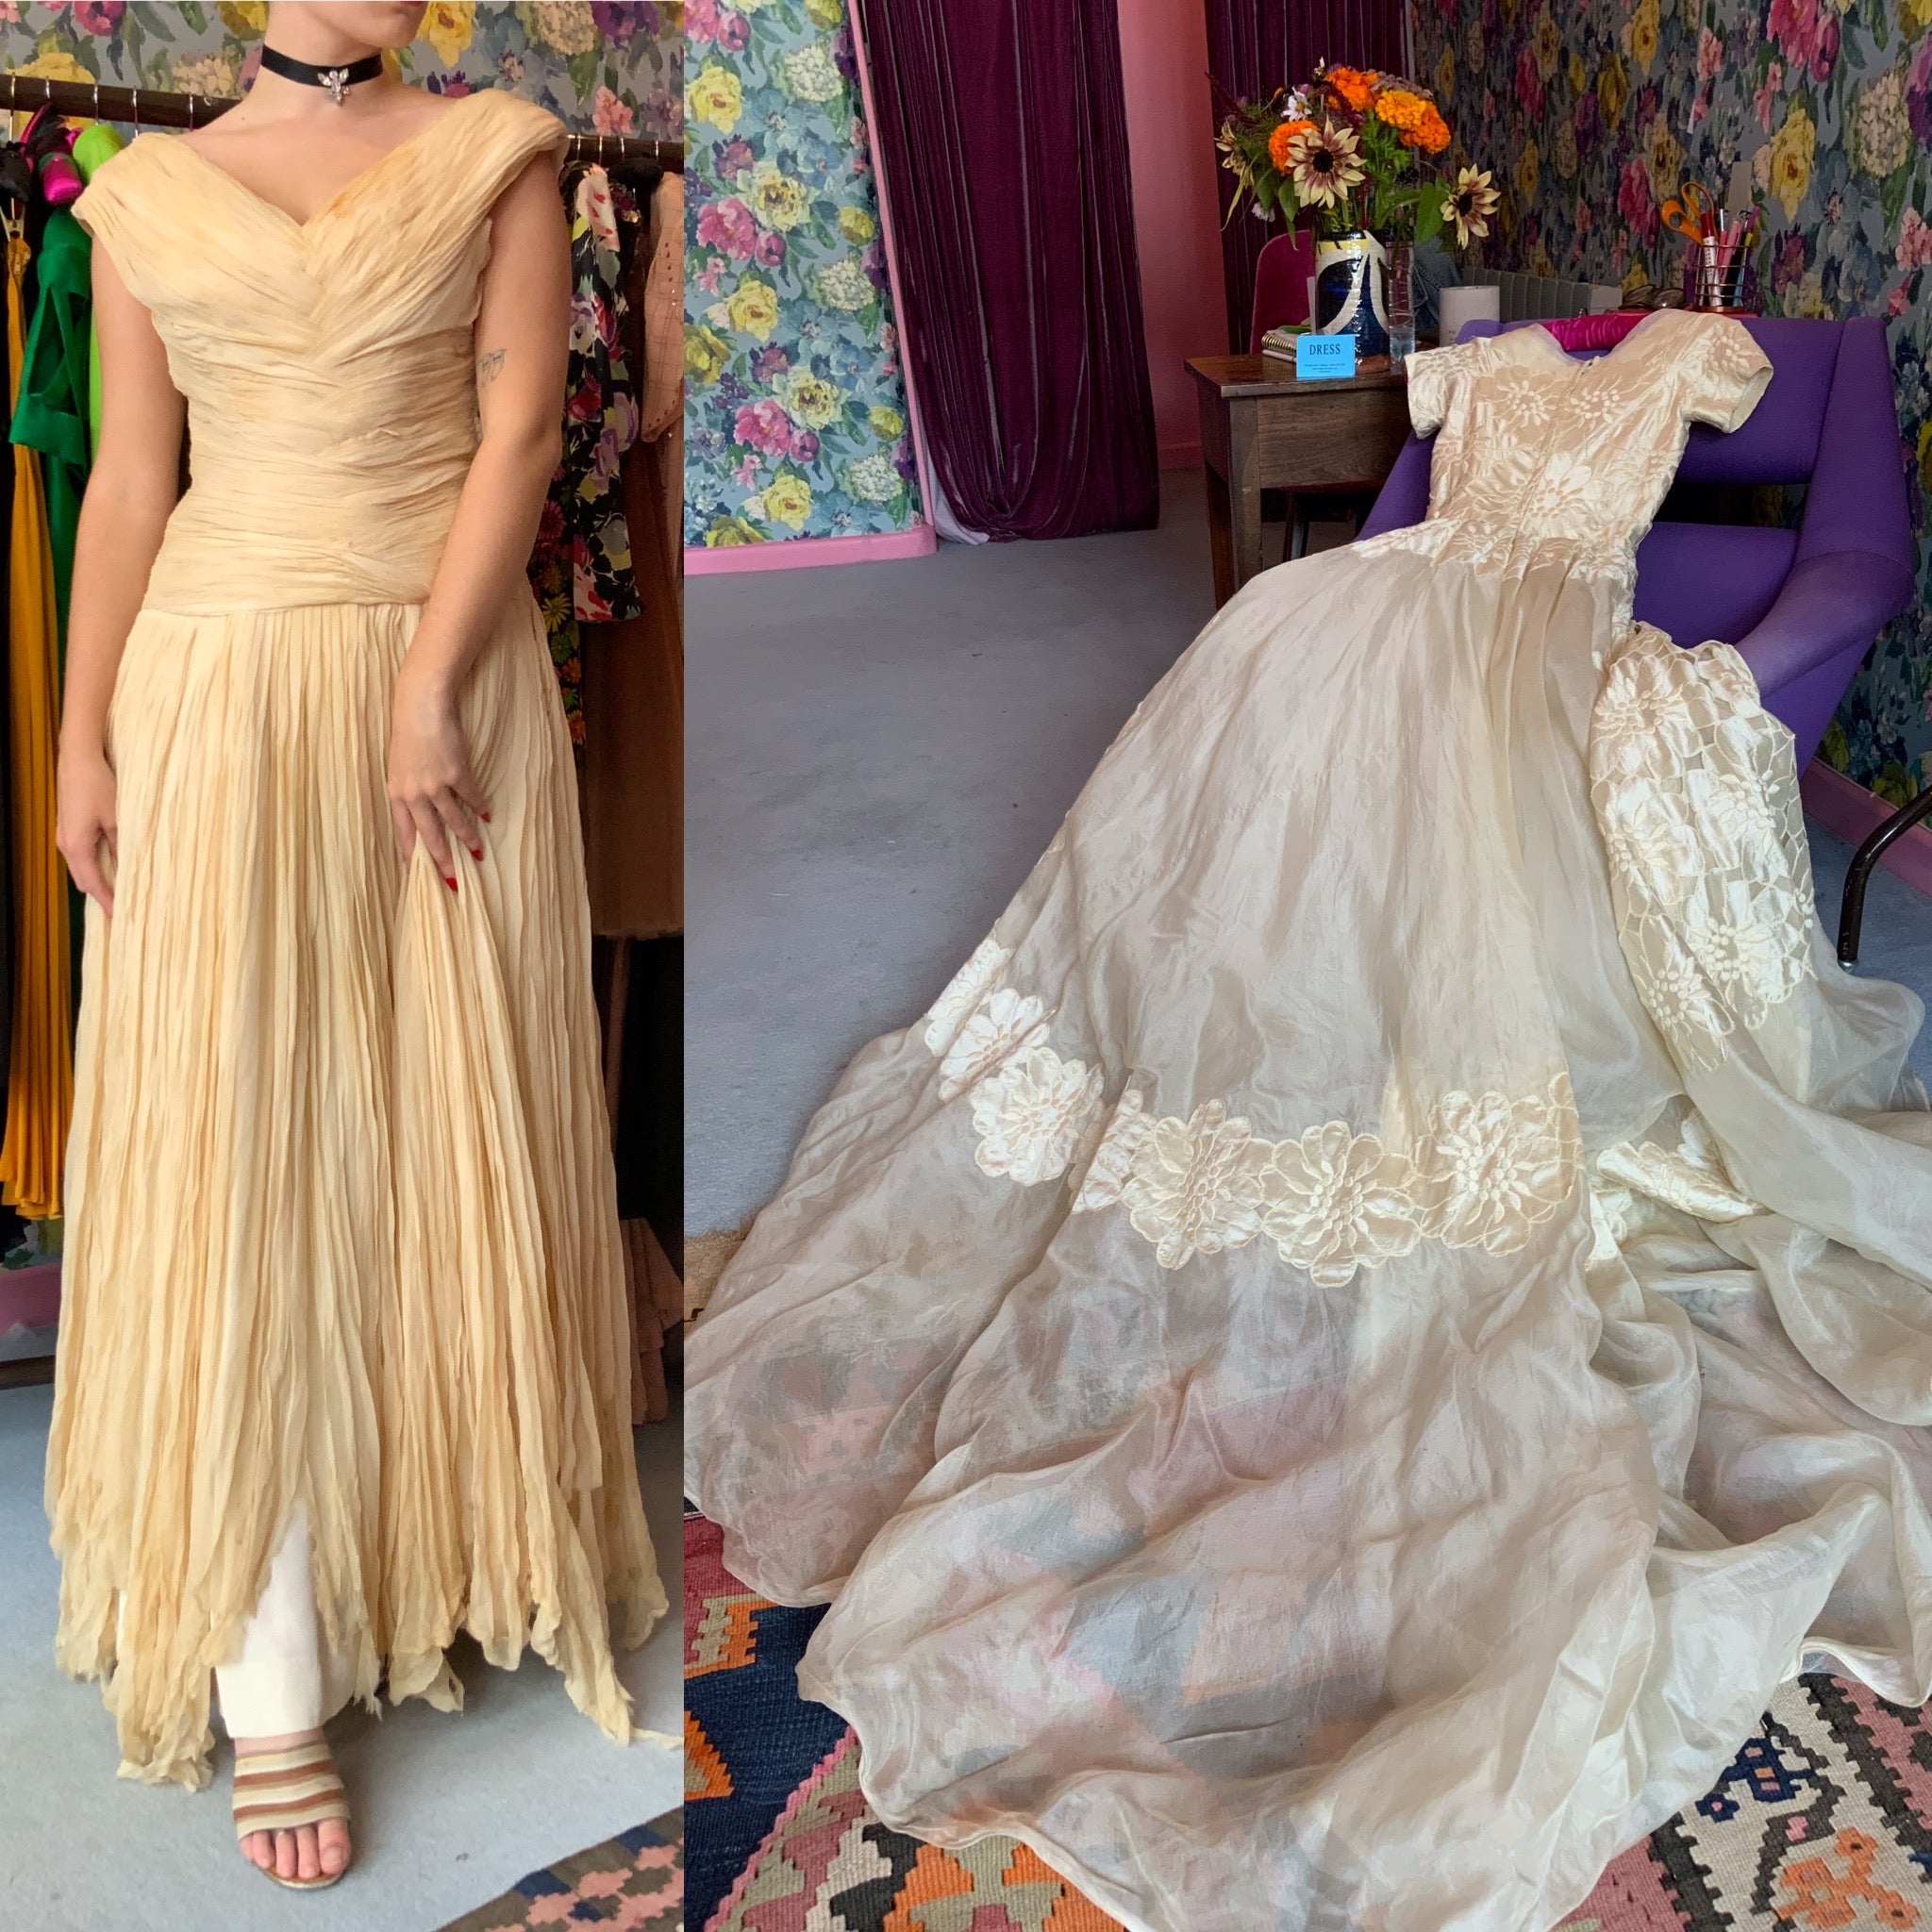 Striking Vintage Dresses for September from Dress, in Bridport